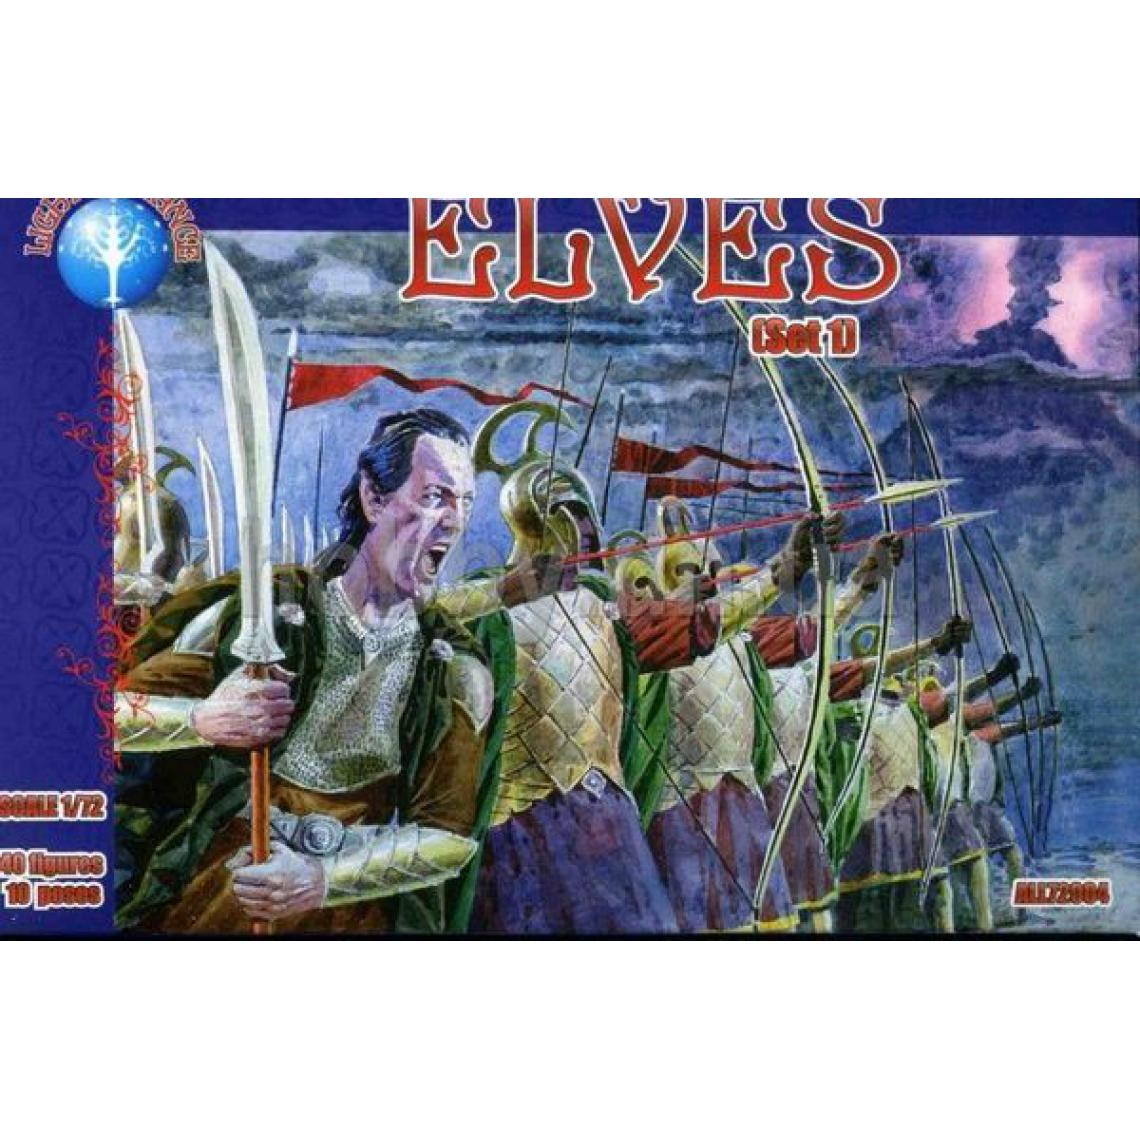 Alliance - Elves, set 1 - 1:72e - ALLIANCE - Accessoires et pièces